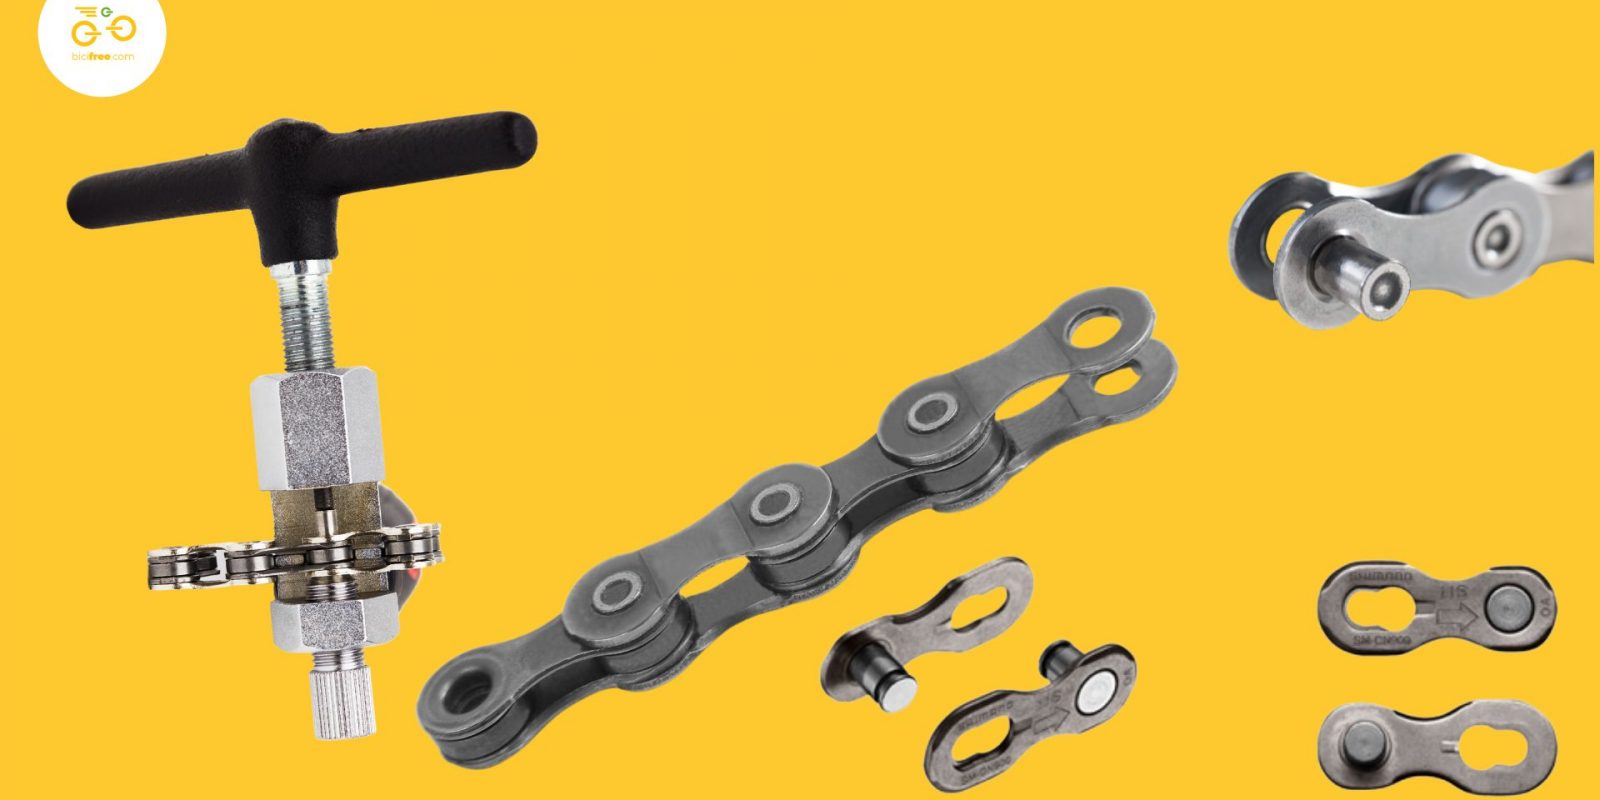 Las herramientas básicas para arreglar cadena bici : tronchacadenas y eslabón rápido